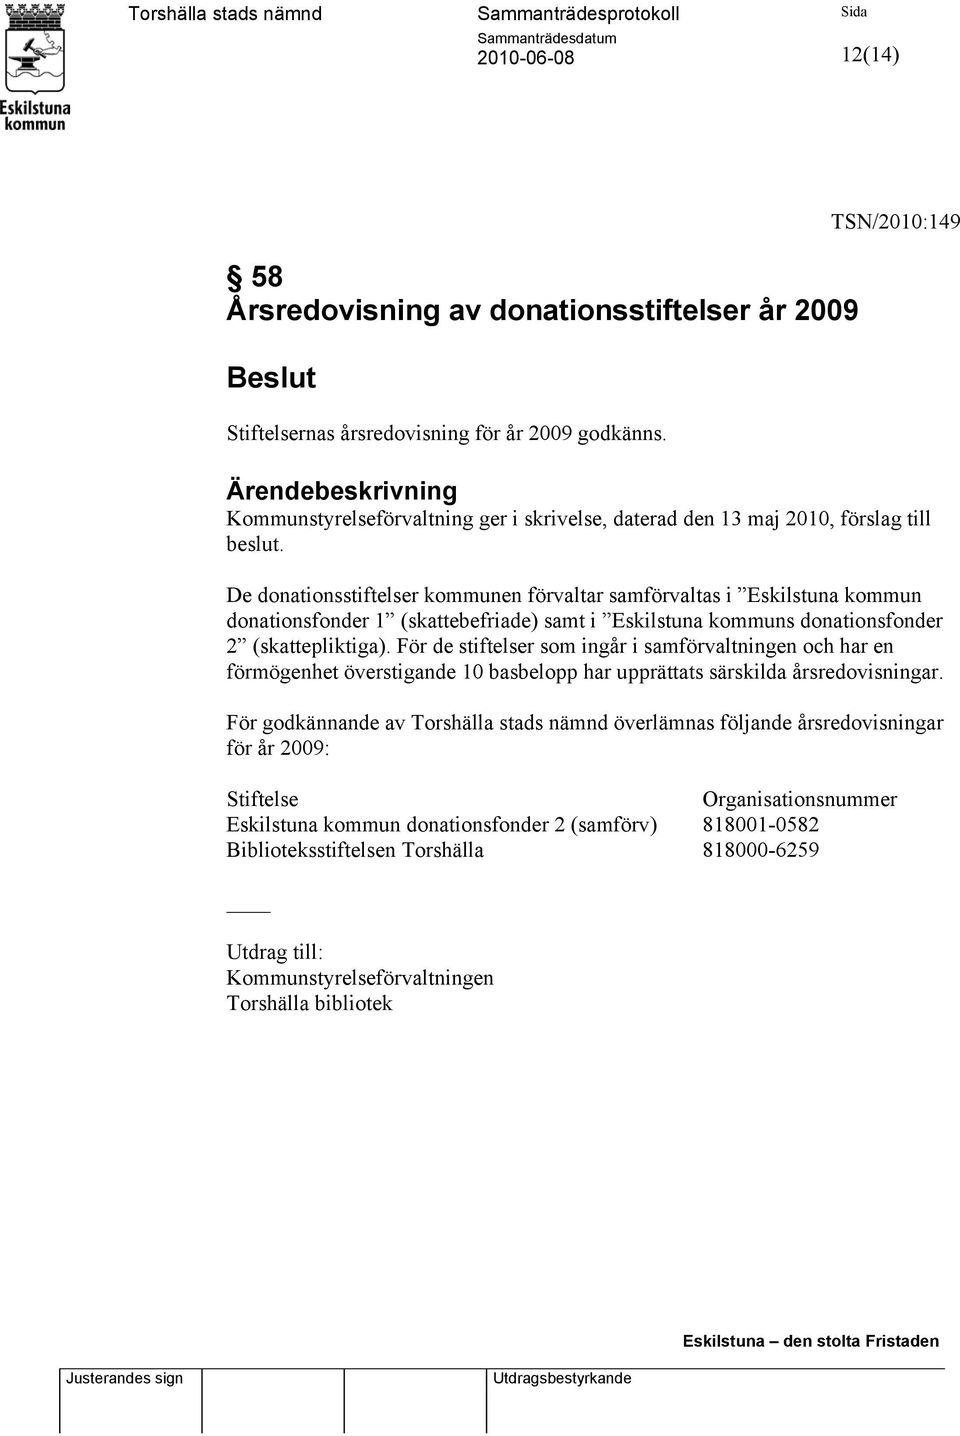 De donationsstiftelser kommunen förvaltar samförvaltas i Eskilstuna kommun donationsfonder 1 (skattebefriade) samt i Eskilstuna kommuns donationsfonder 2 (skattepliktiga).